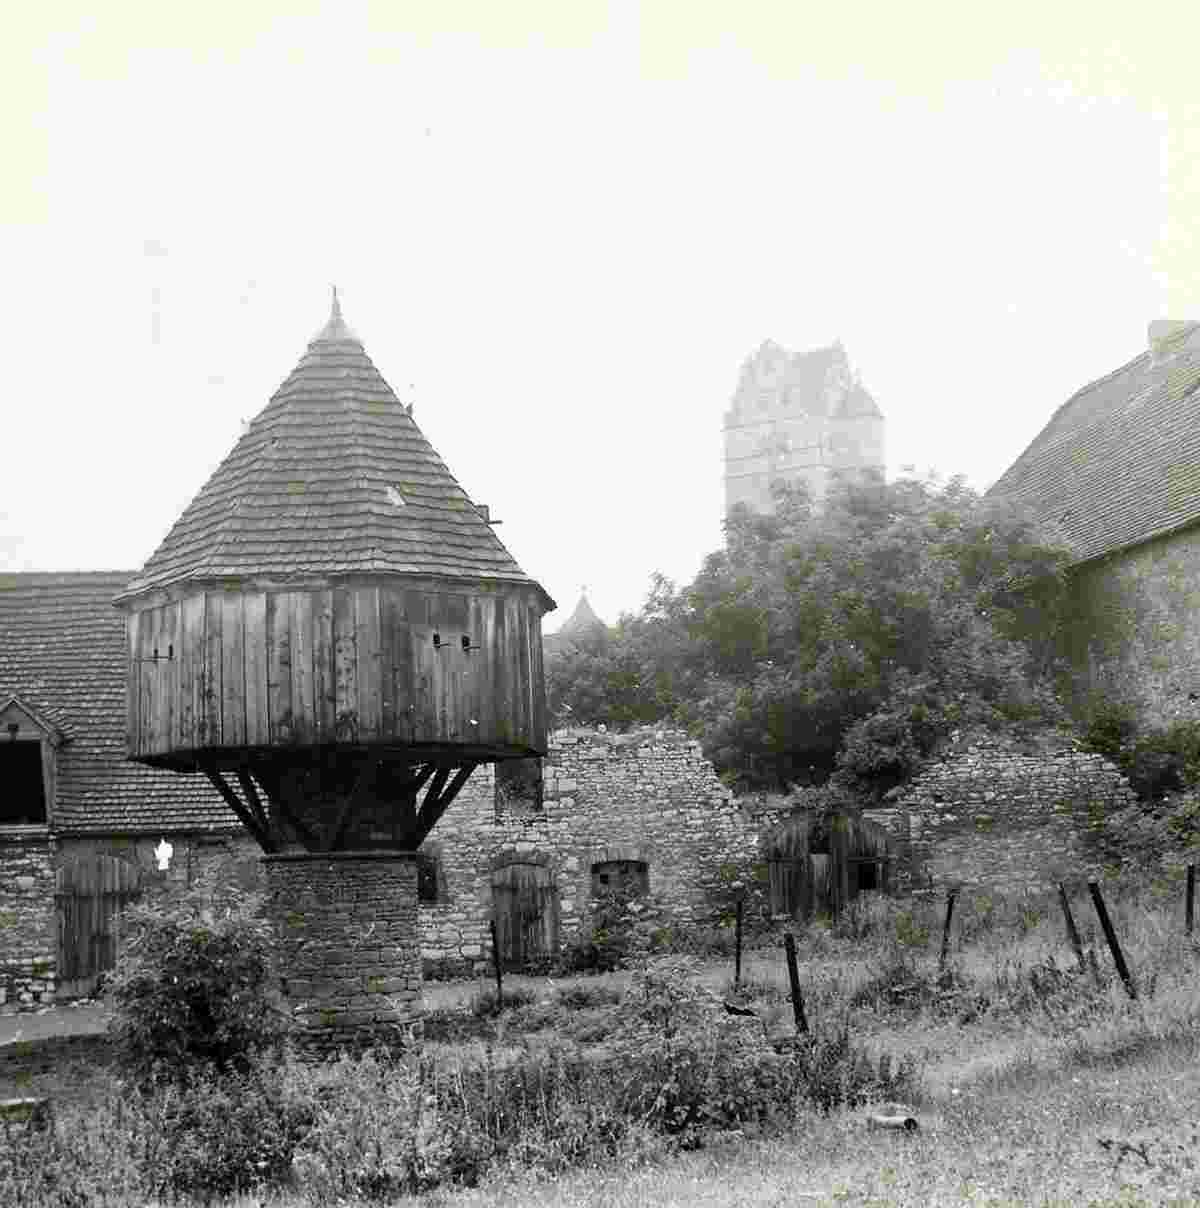 Plötzkau. Burg Plötzkau, Taubenhaus und Ruinen eines Gehöftes gegen den Schloßturm